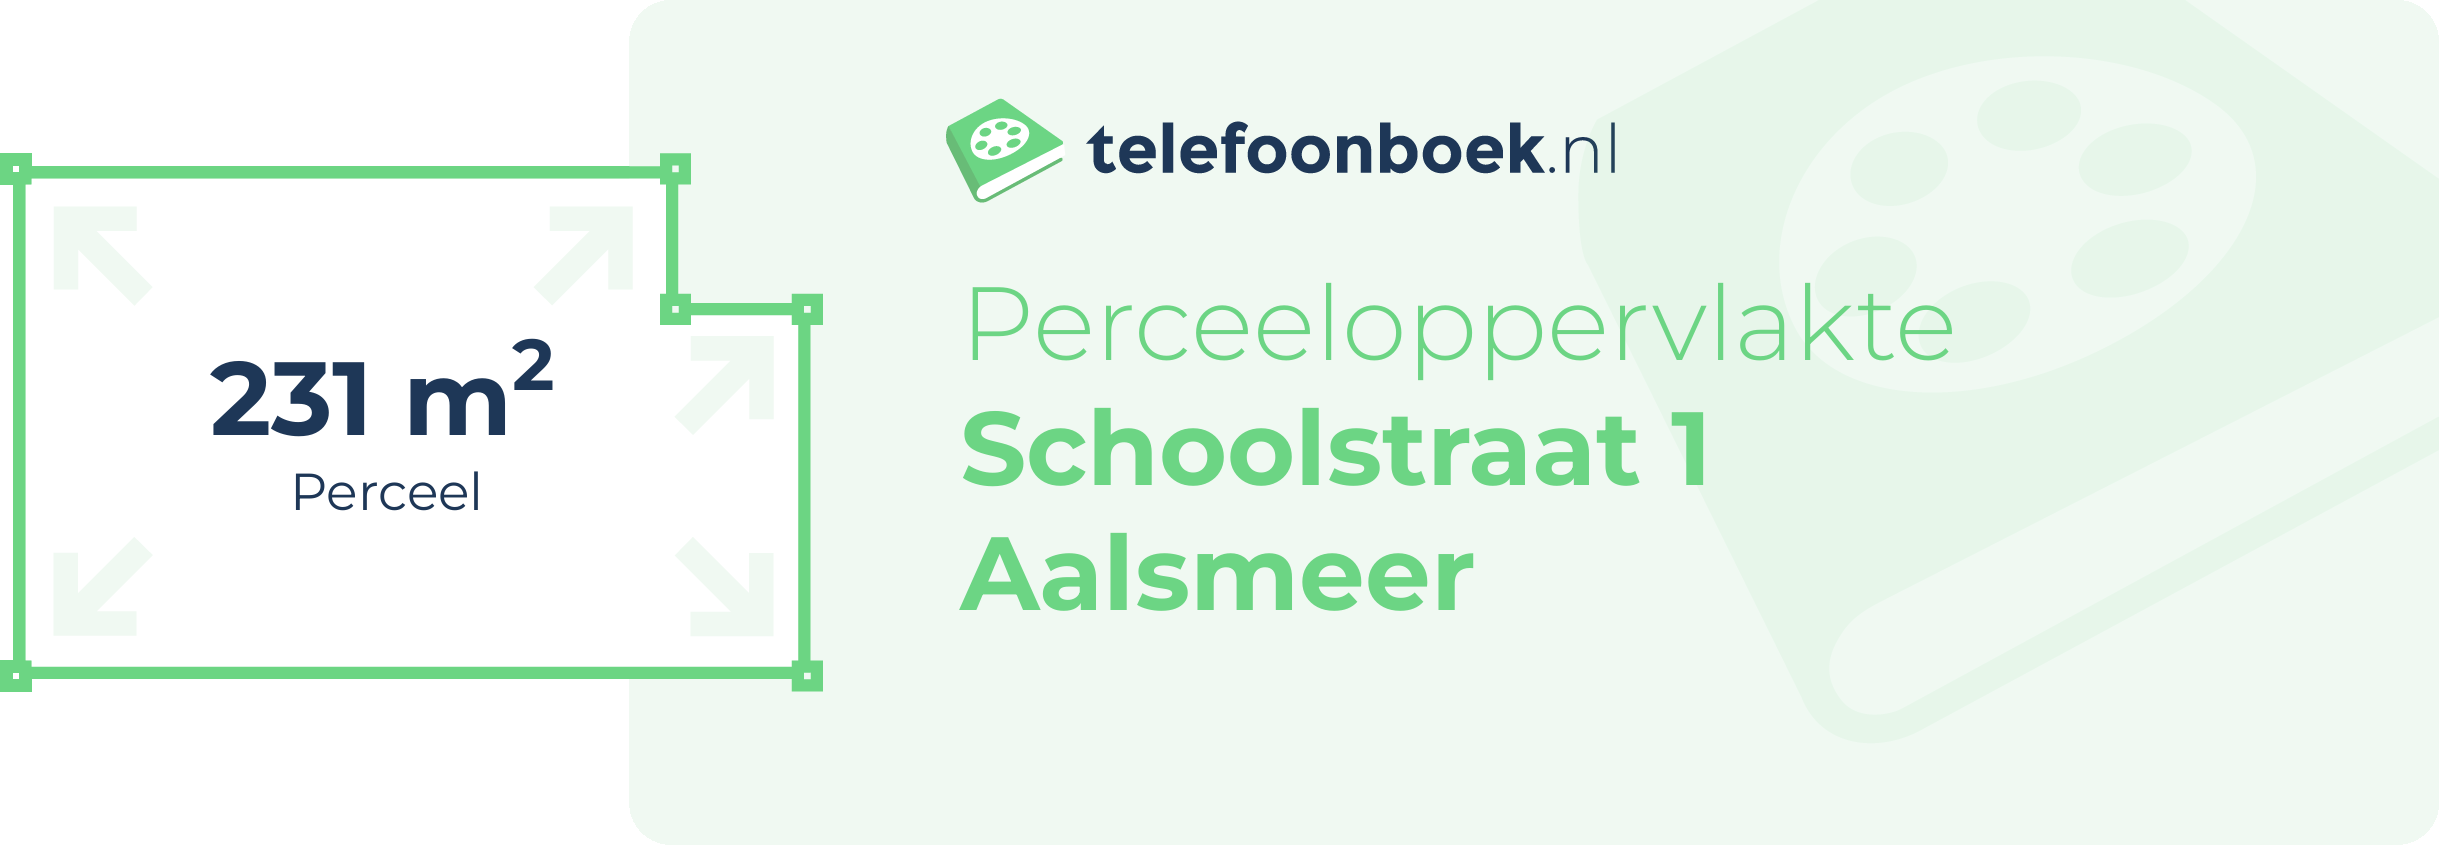 Perceeloppervlakte Schoolstraat 1 Aalsmeer